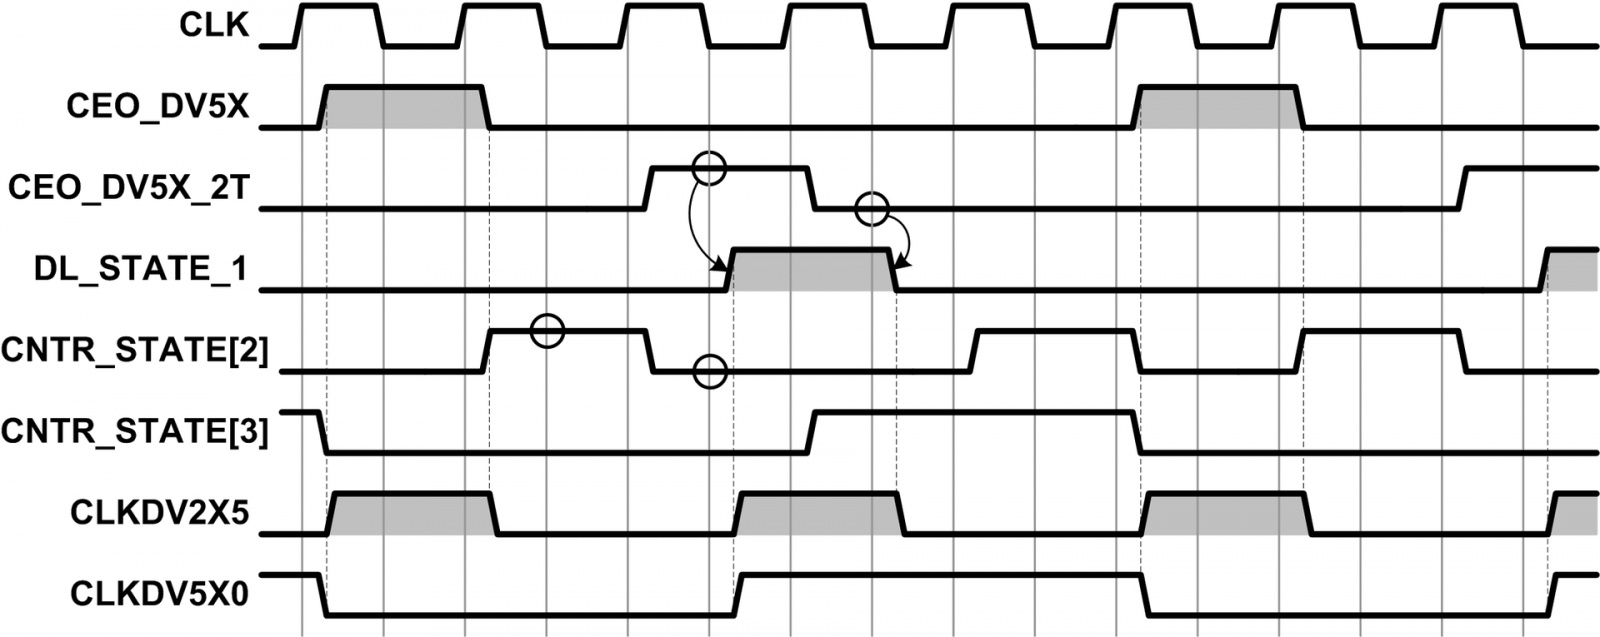 Организация делителя частоты с дробным коэффициентом деления в объёме ПЛИС - 5